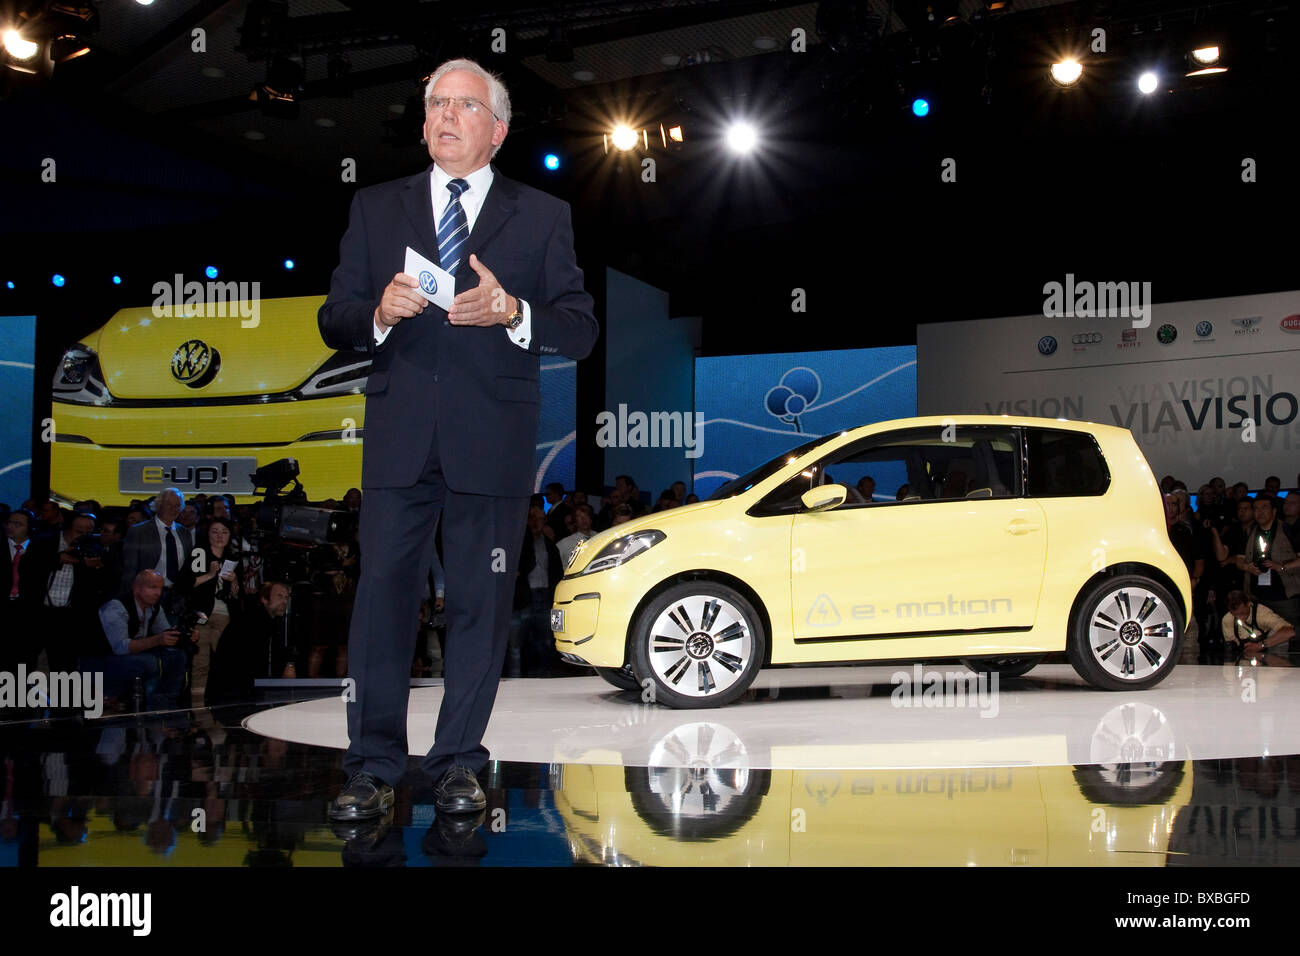 Ulrich Hackenberg, Vorsitzender des Vorstands der Volkswagen AG, Entwicklung präsentiert die Studie des VW Elektroauto e-Up, während Stockfoto